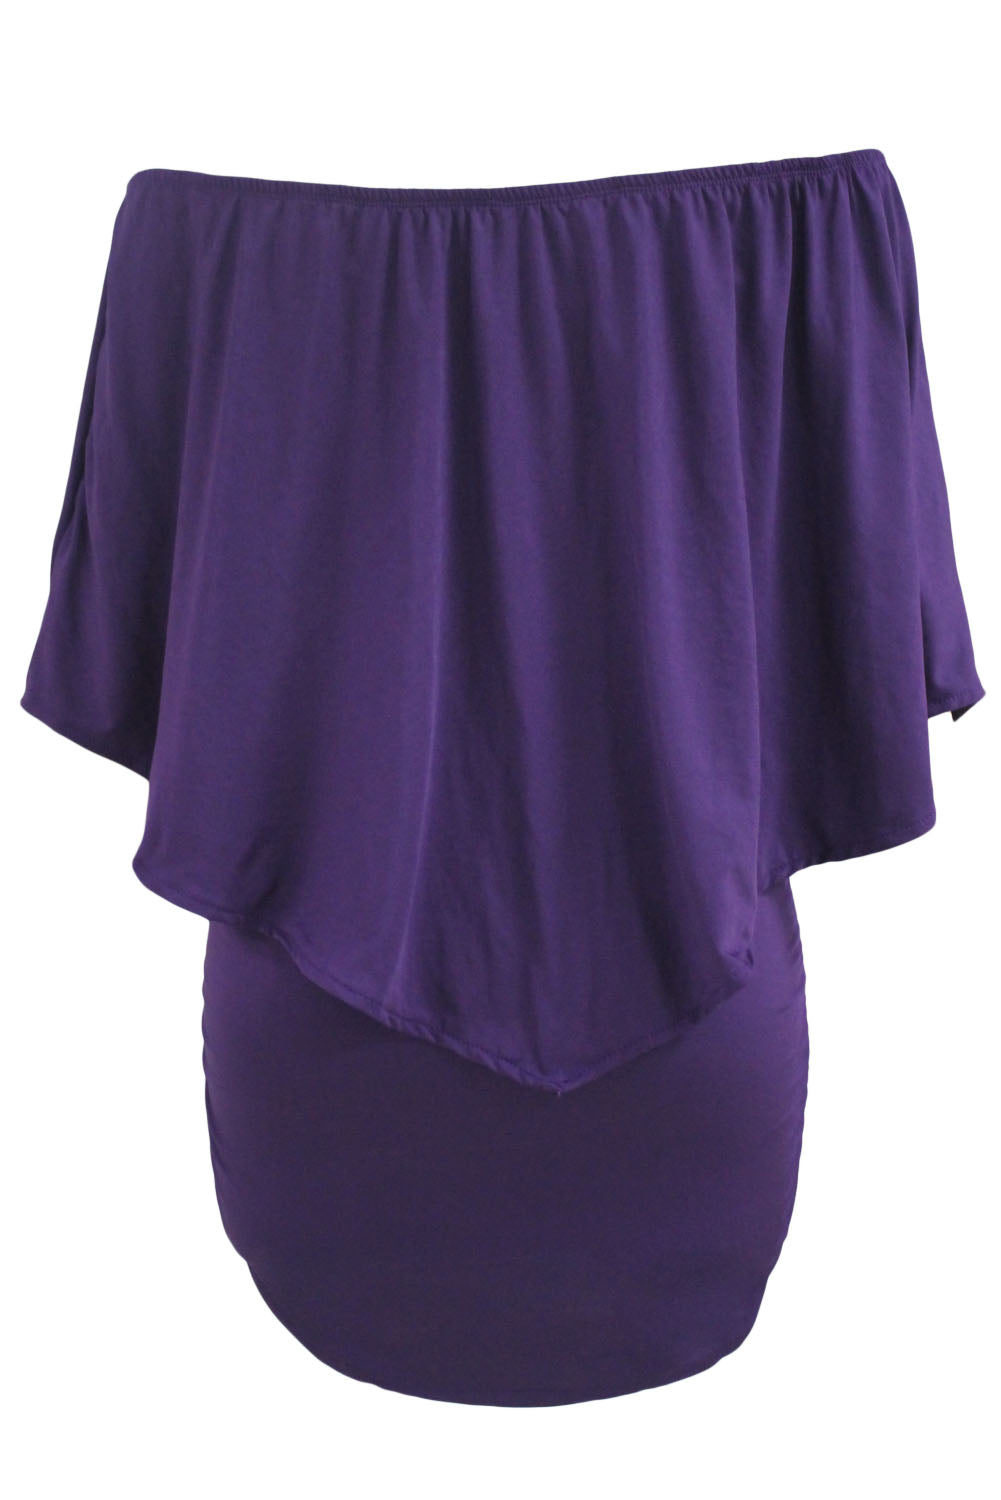 Plus Size Multiple Dressing Layered Purple Mini Poncho Dress Plus Size Dresses JT's Designer Fashion